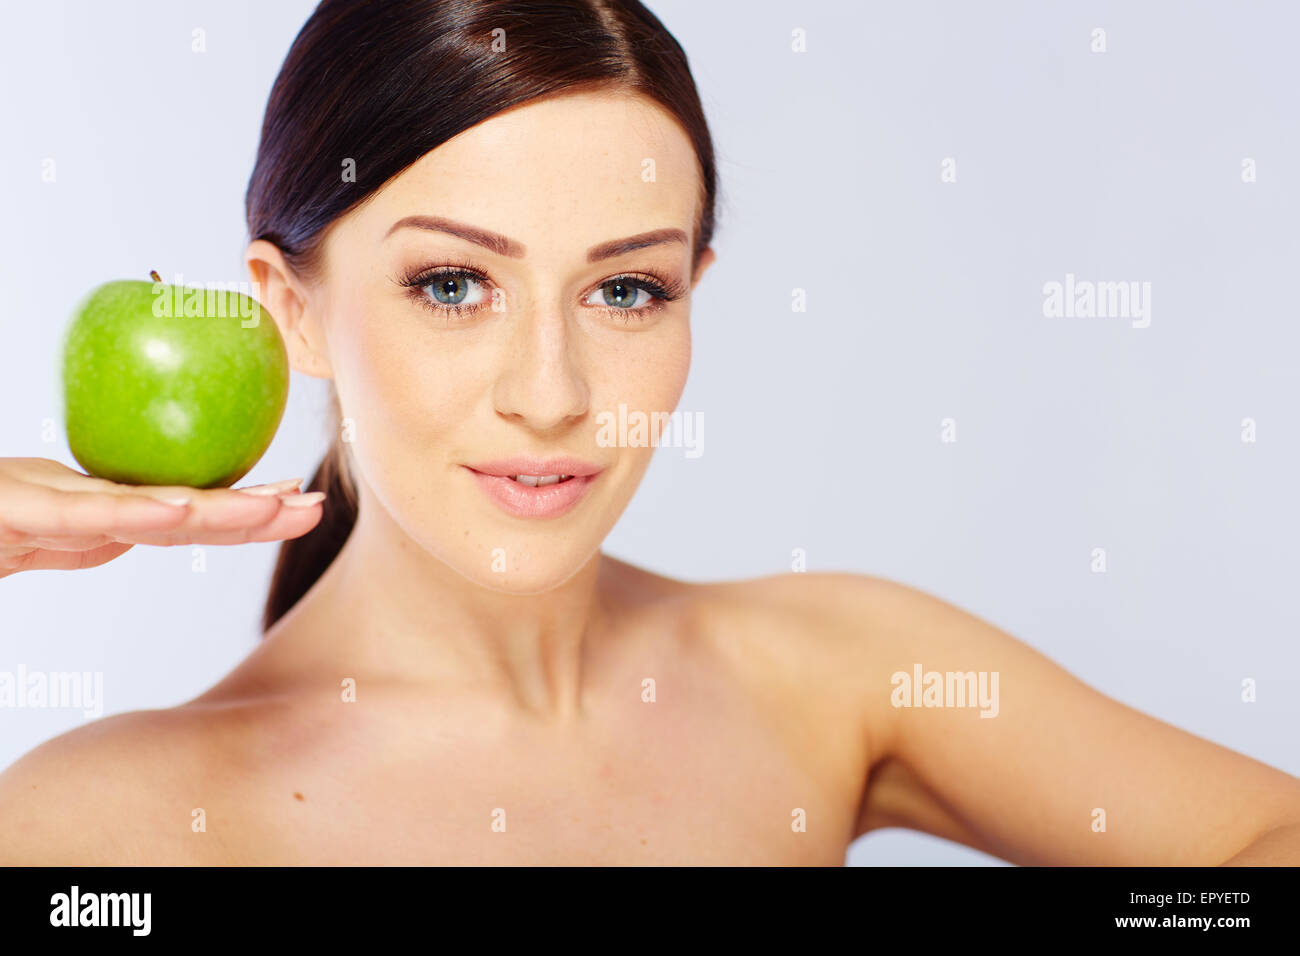 Femme avec une pomme verte Banque D'Images